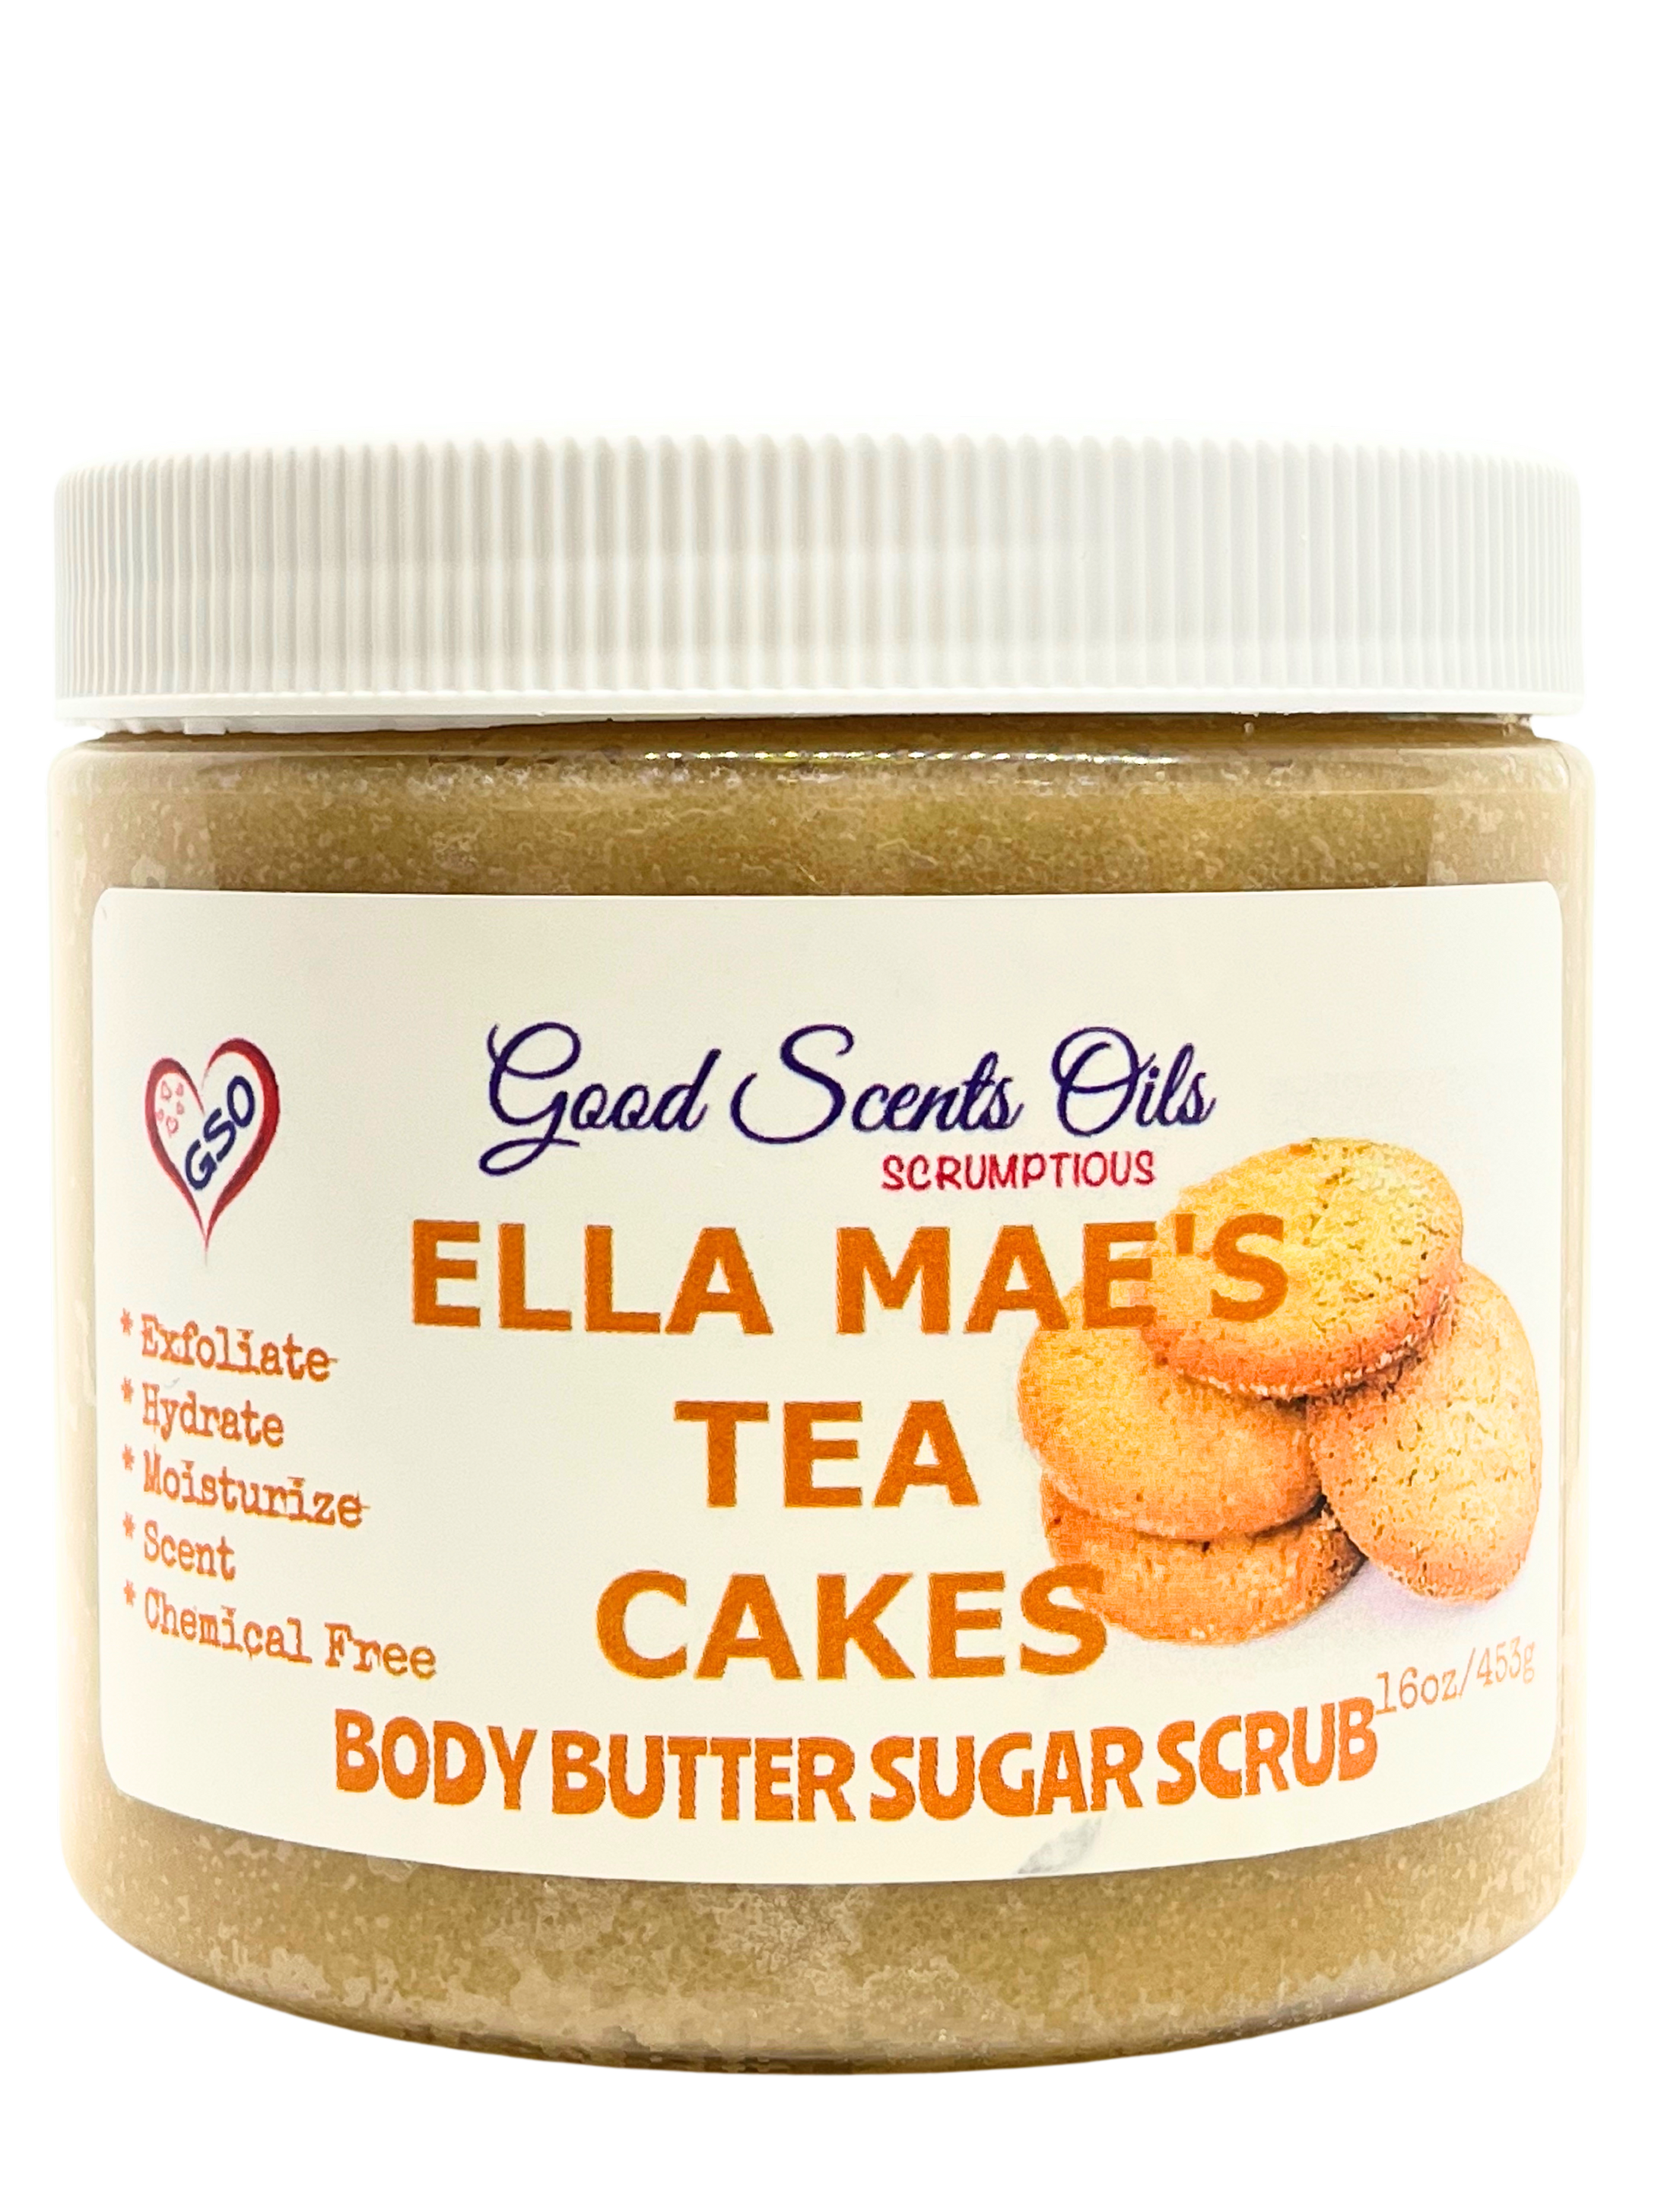 ELLA MAE’S TEA CAKES BODY SCRUB 16oz